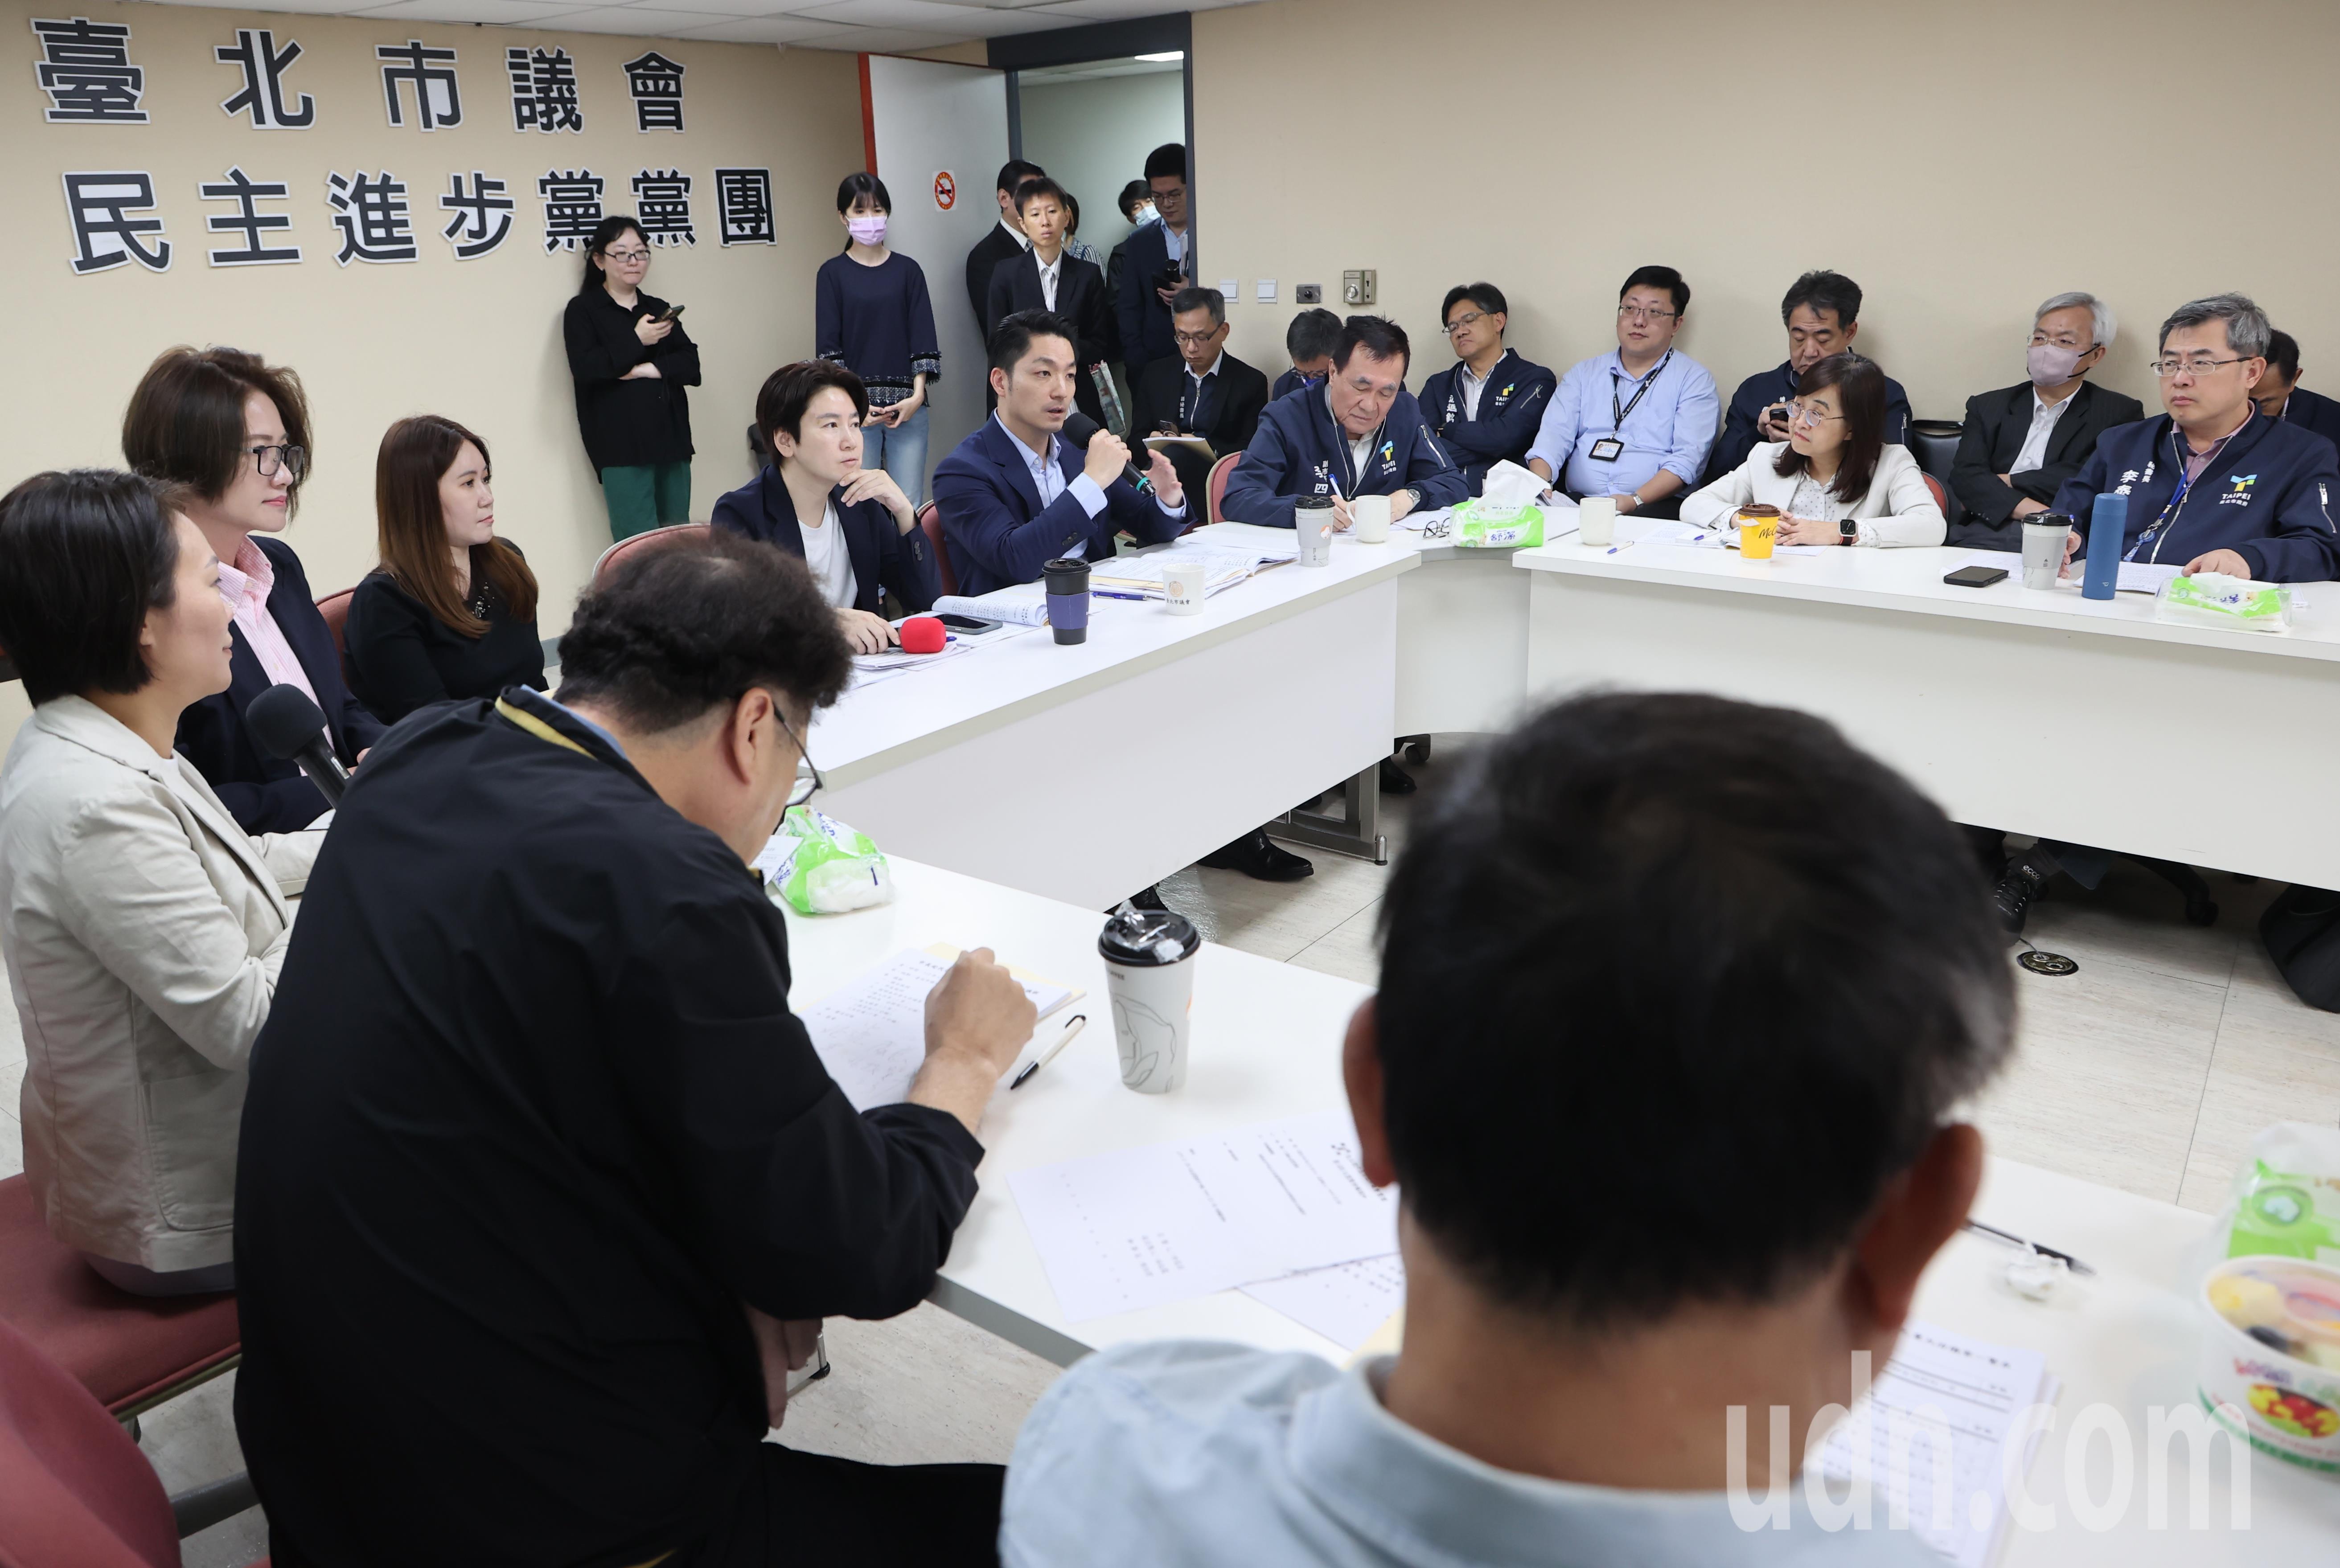 台北市长蒋万安（中）中午前往议会民进党团说明市府重大法议案。记者曾学仁／摄影